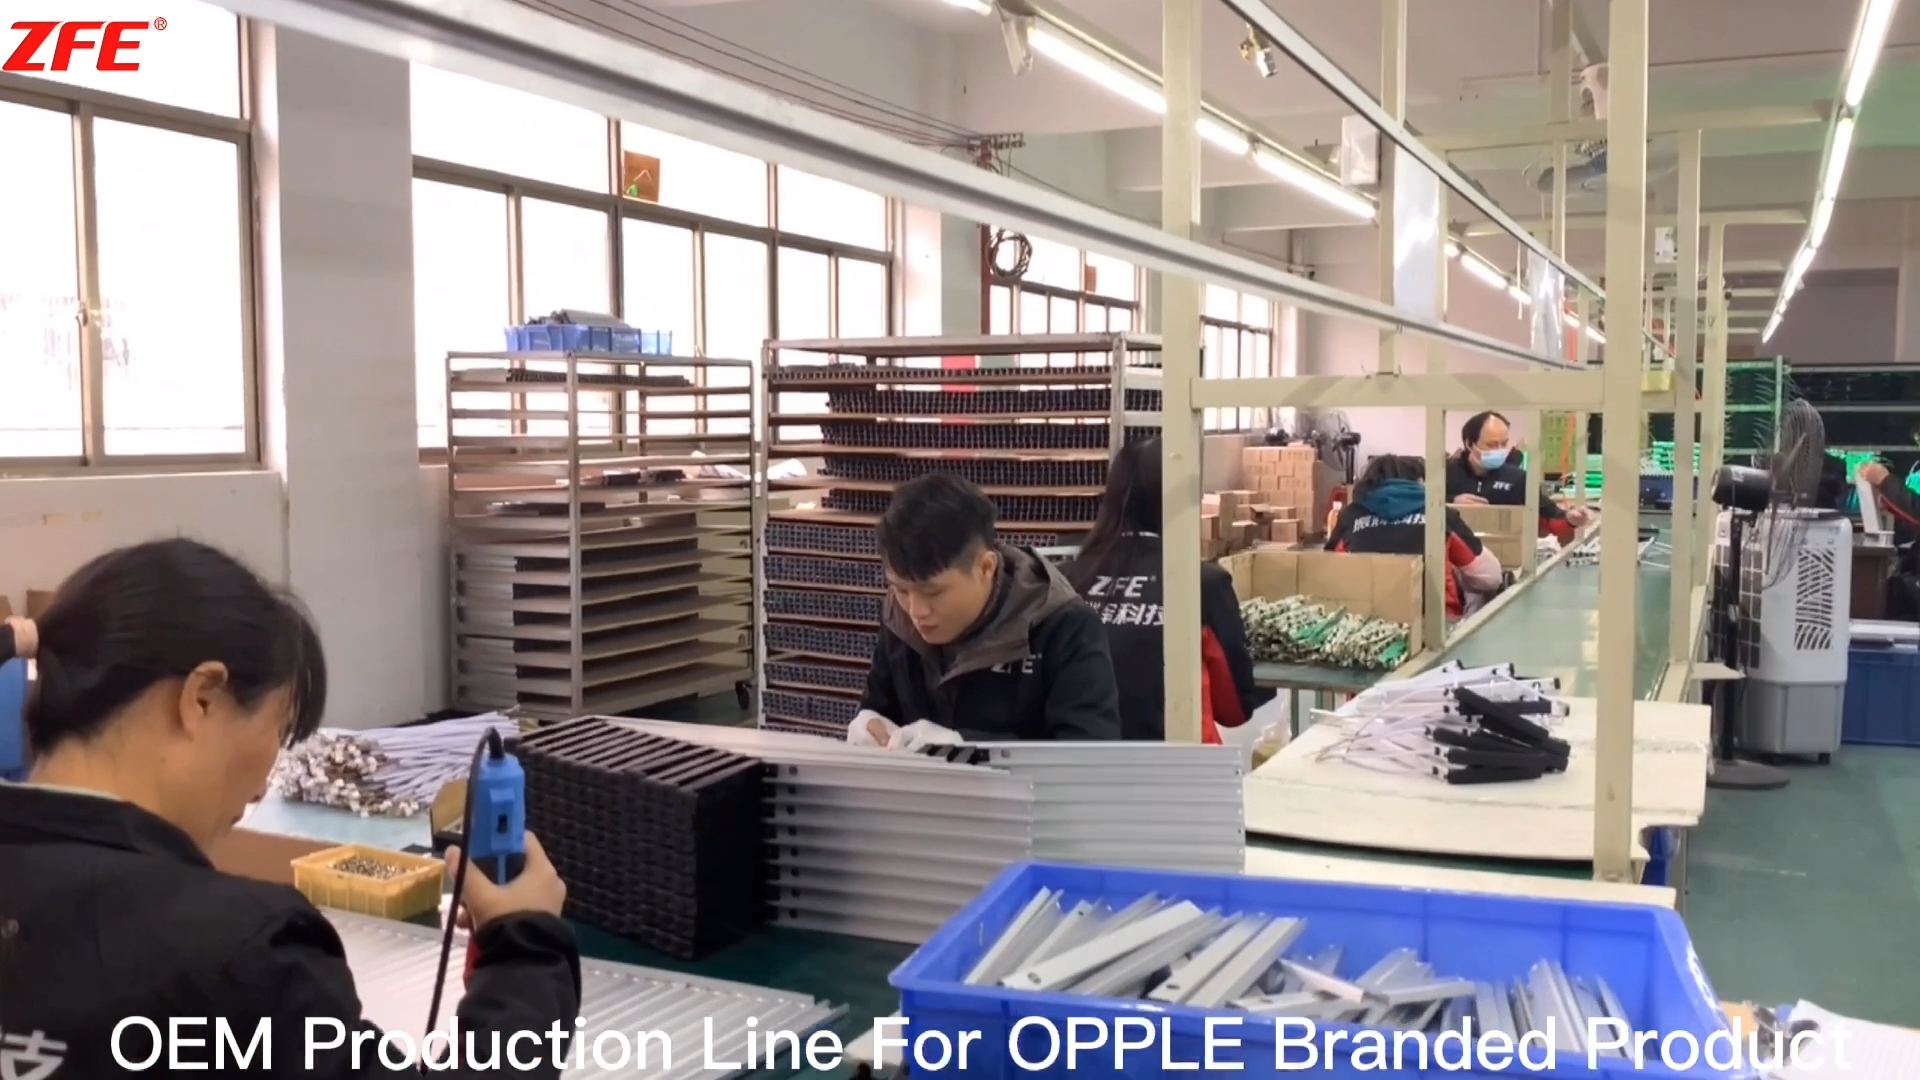 Pasgemaakte OEM-produksielyn vir OPPLE-handelsmerk-produk vervaardig deur Guangdong Zhenhui Fire Technology